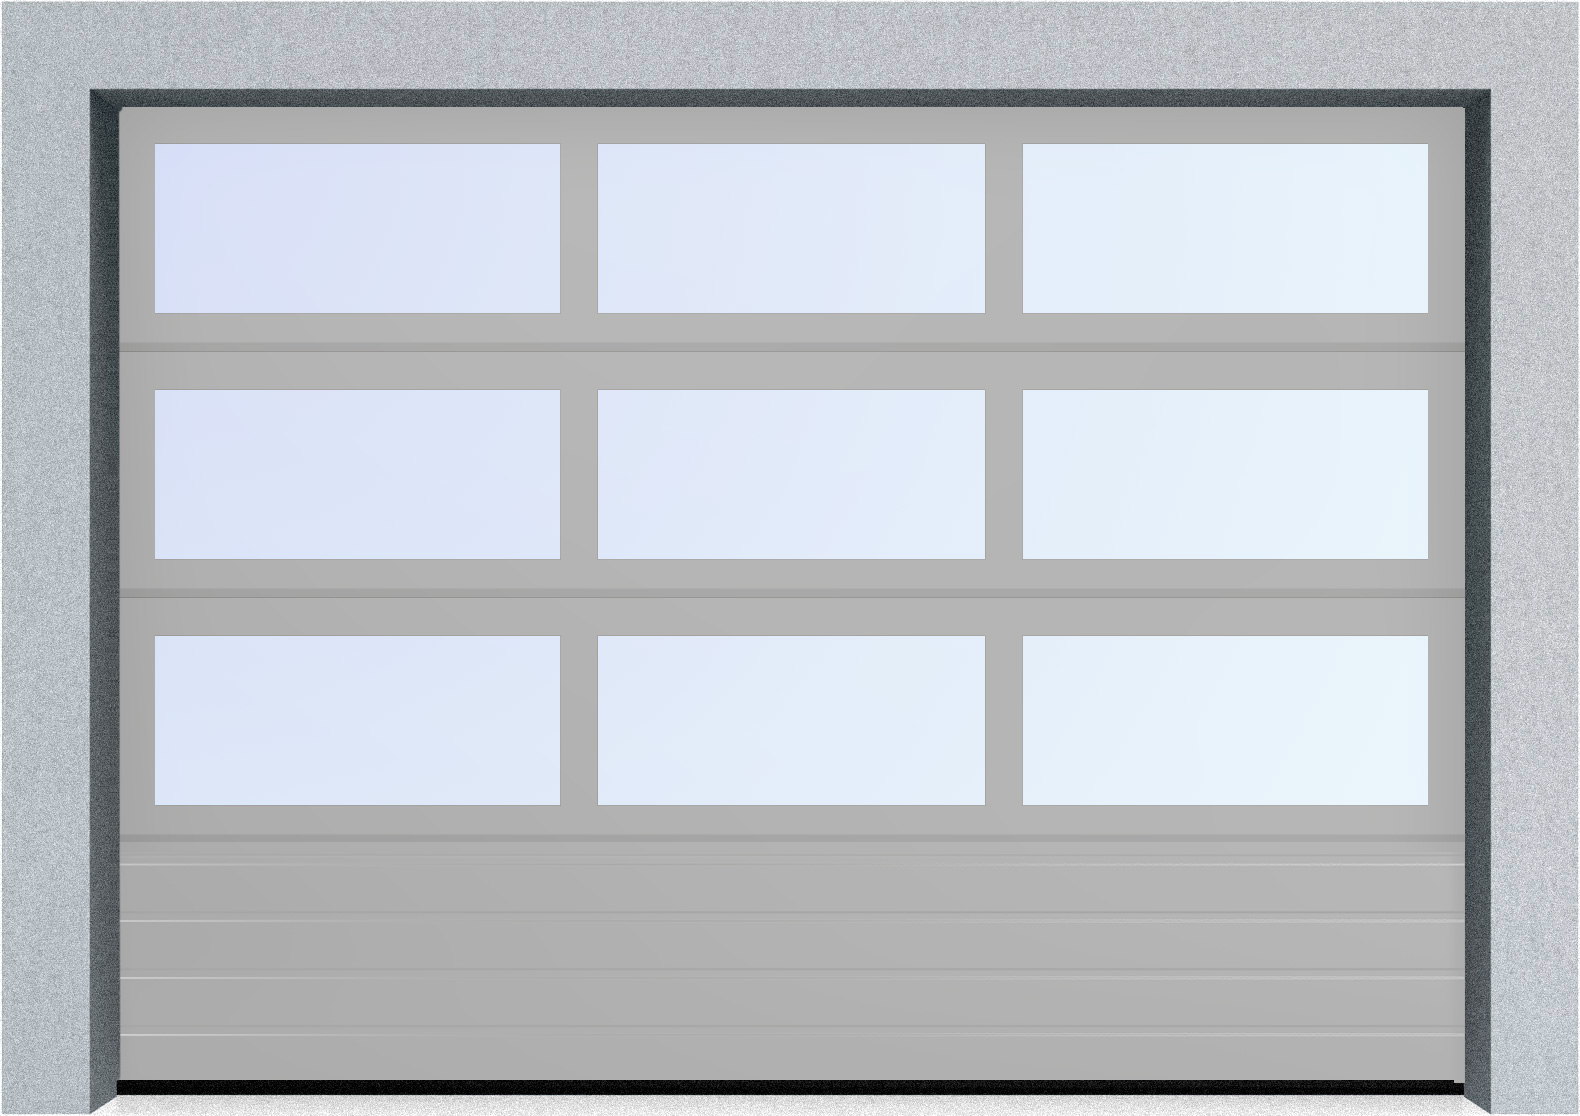  Секционные панорамные ворота серии AluTrend с комбинированным типом полотна (АЛПС) 2500х2375 нижняя панель S-гофр, Микроволна стандартные цвета, фото 18 